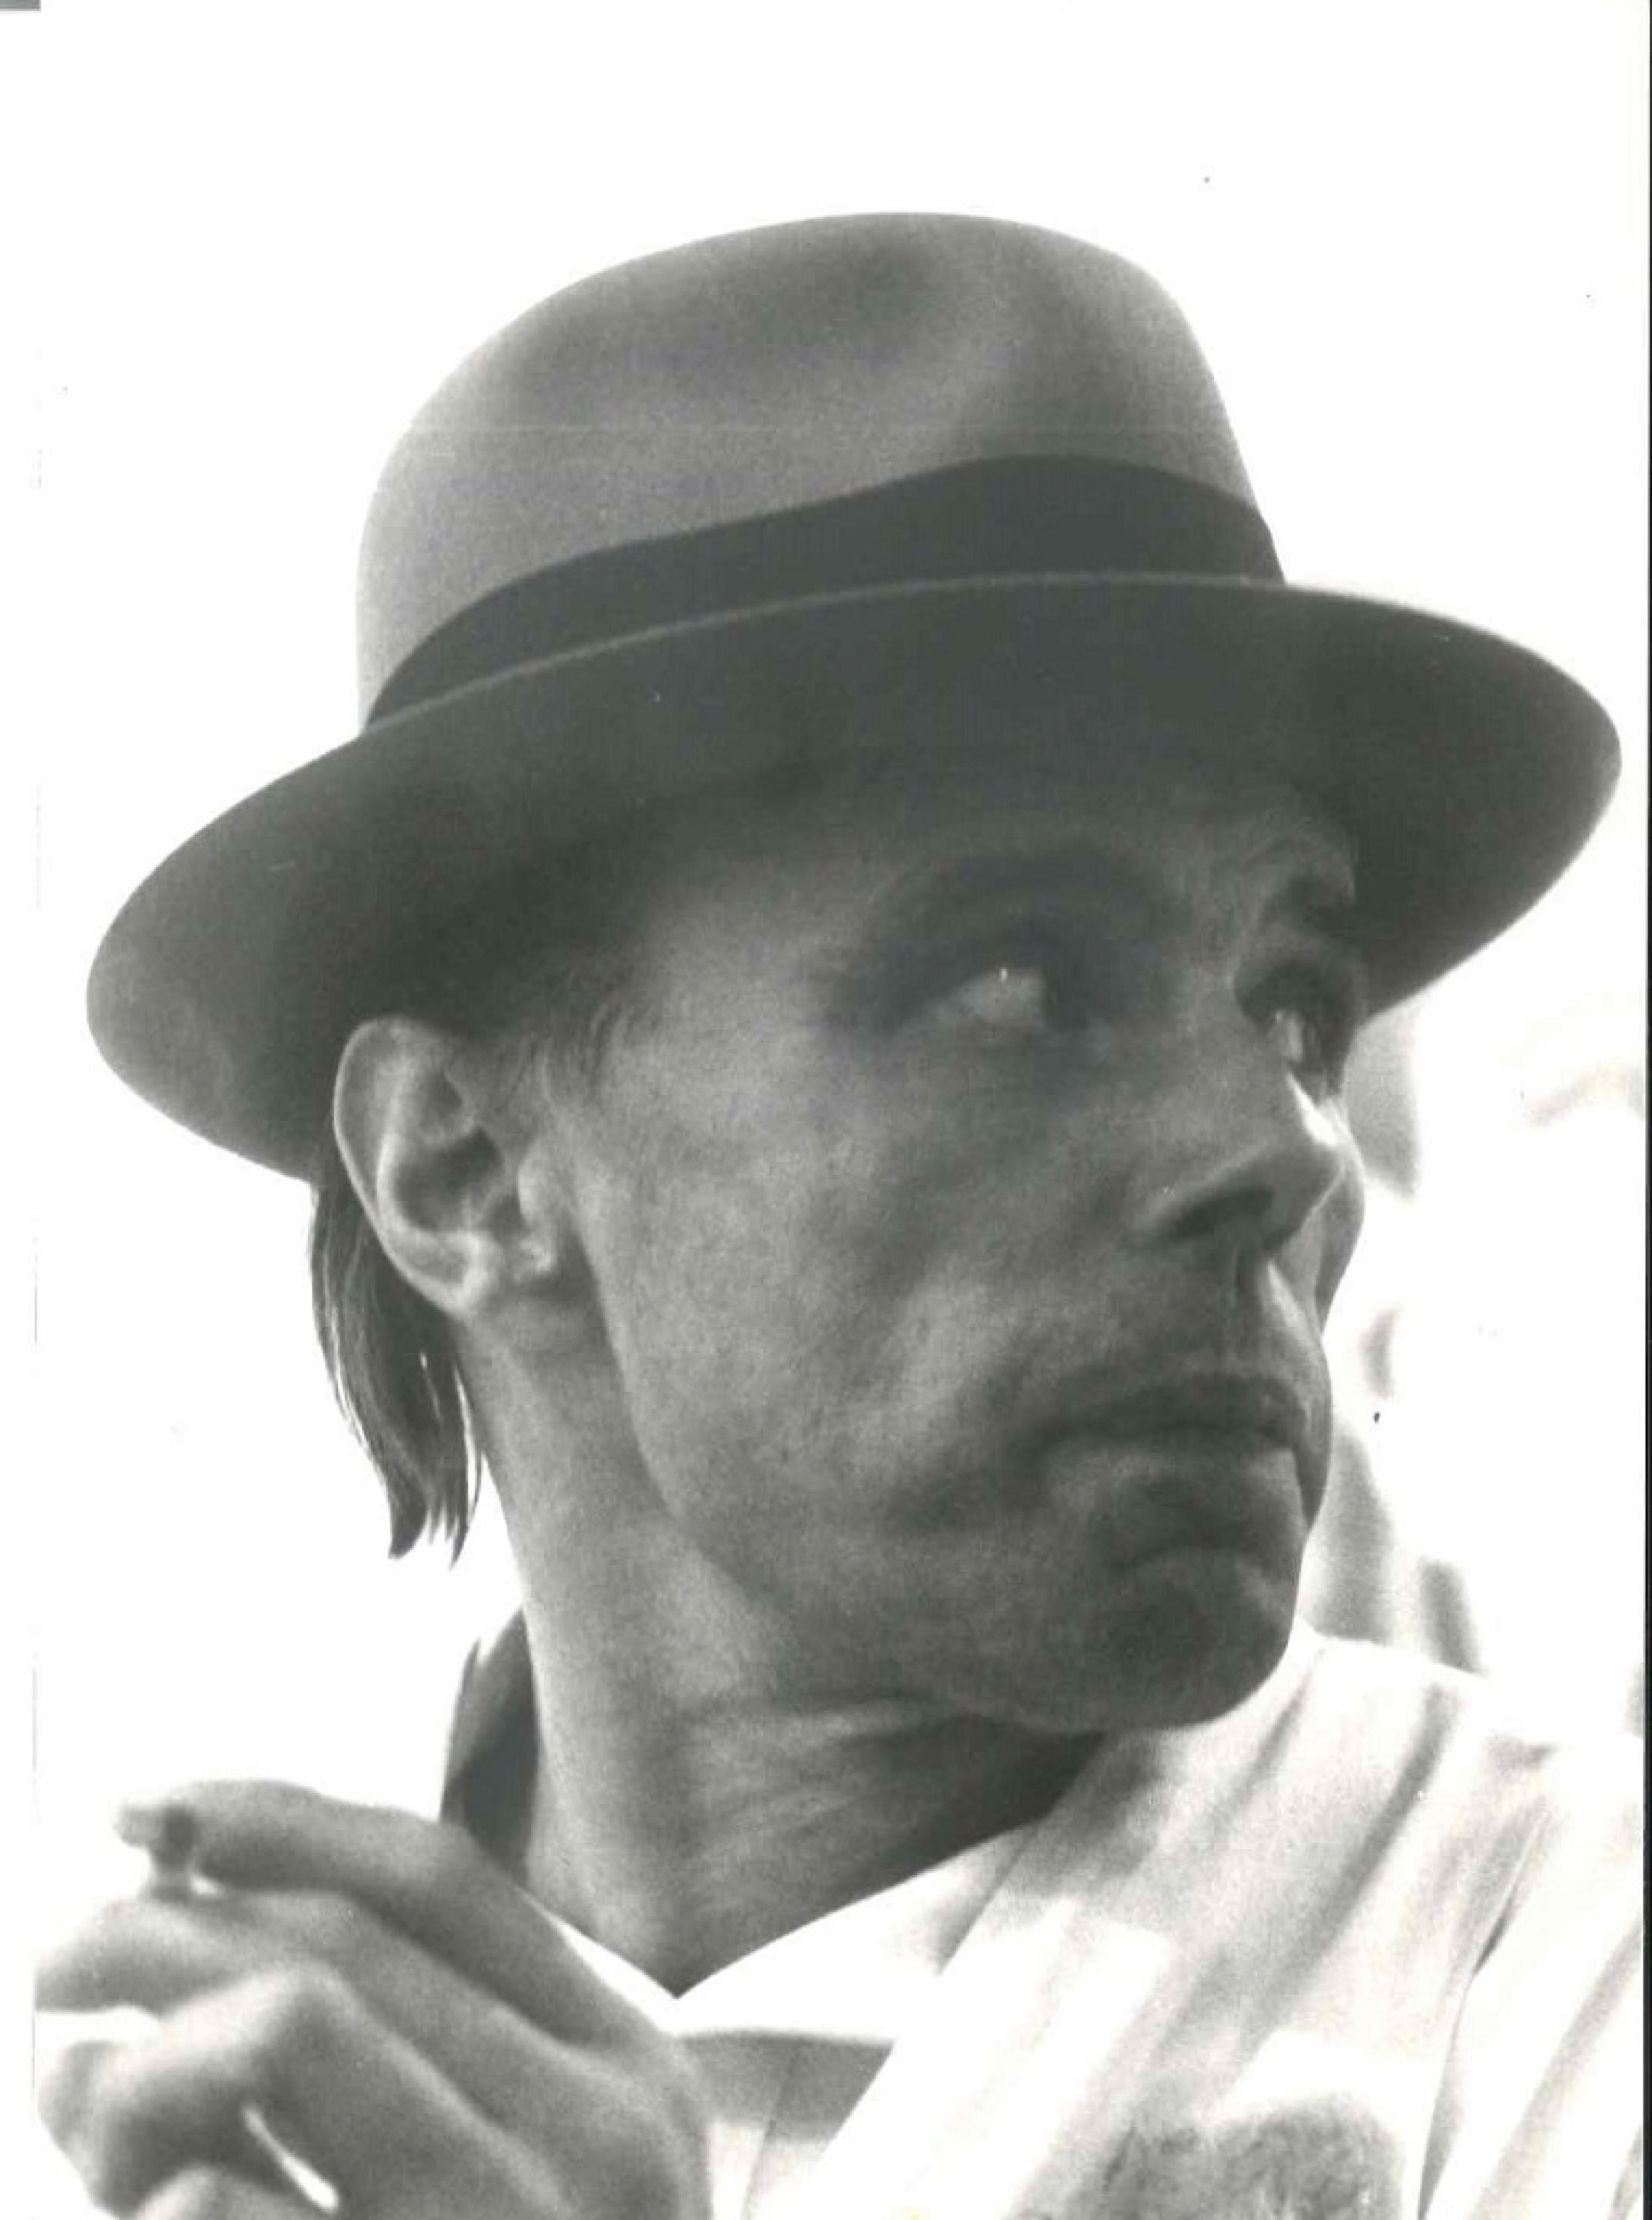 Portrait of Joseph Beuys  - Vintage Photo - 1970s